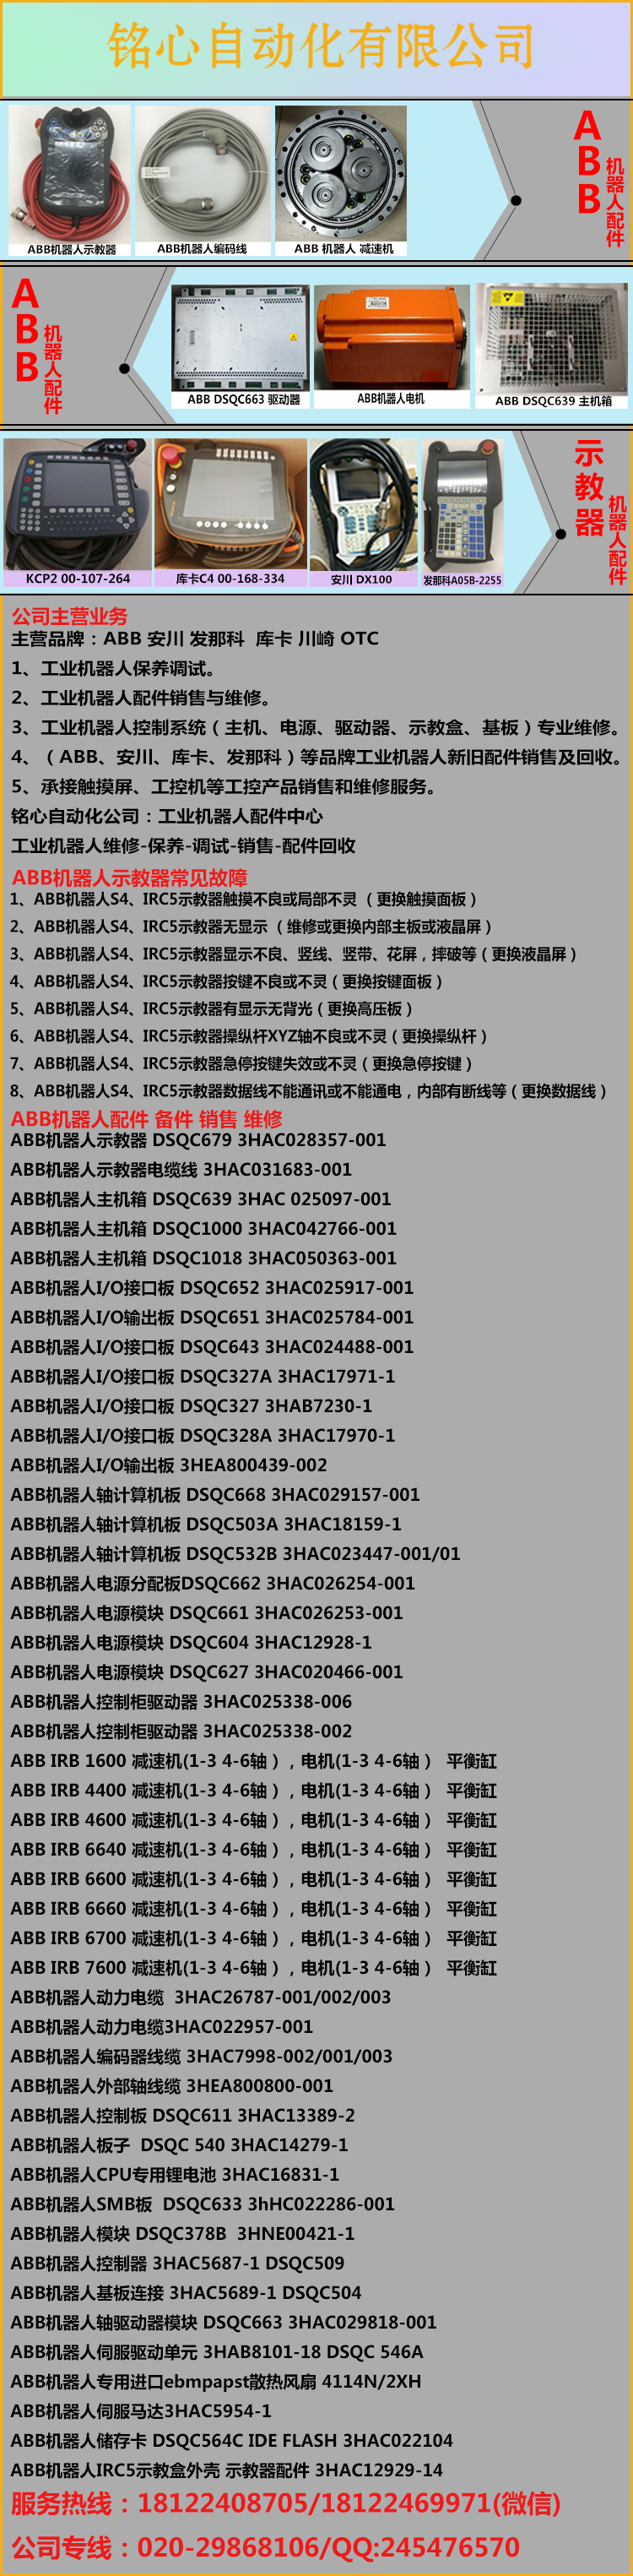 DSQC679 3HAC028357-001 ABB机器人示教器 销售 维修 ABB,示教器,DSQC679,3HAC028357-001